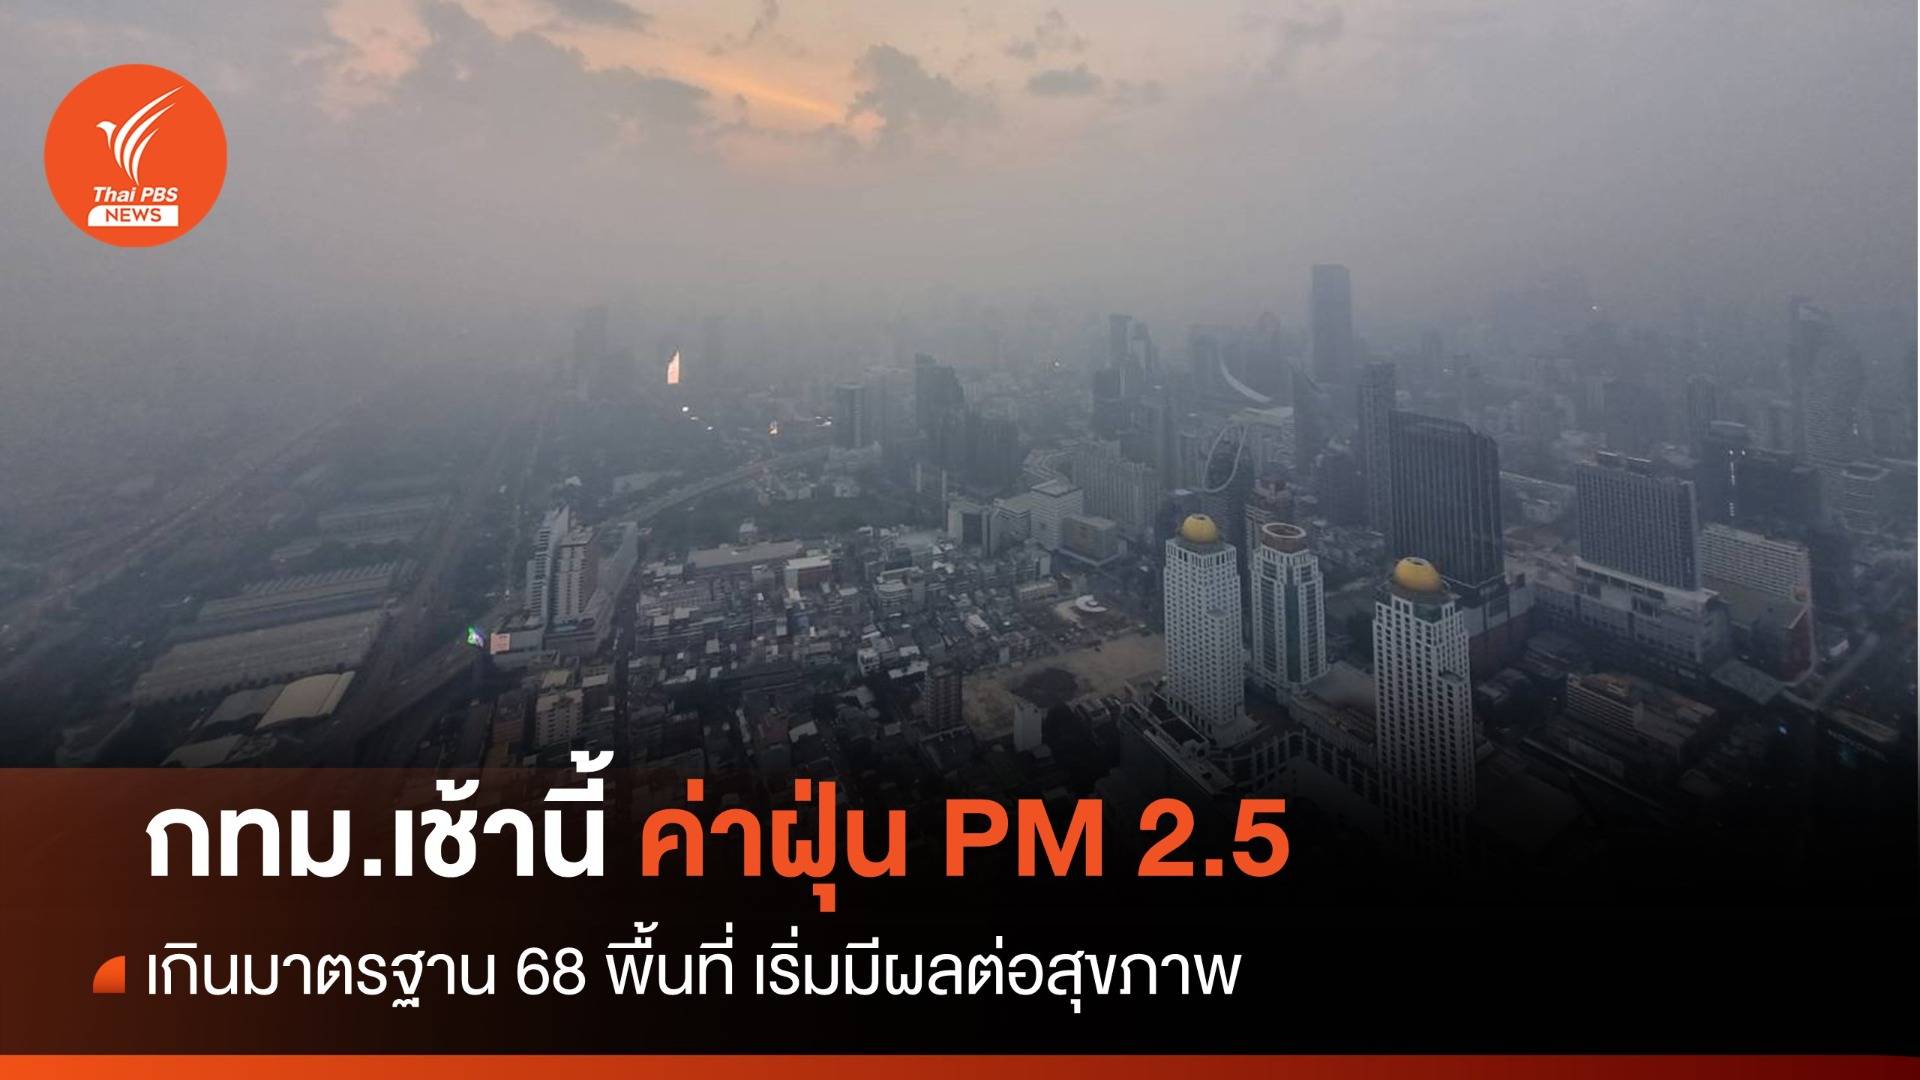 กทม.ค่าฝุ่น PM2.5 เช้านี้พุ่งเกินมาตรฐาน 68 พื้นที่ เริ่มมีผลต่อสุขภาพ